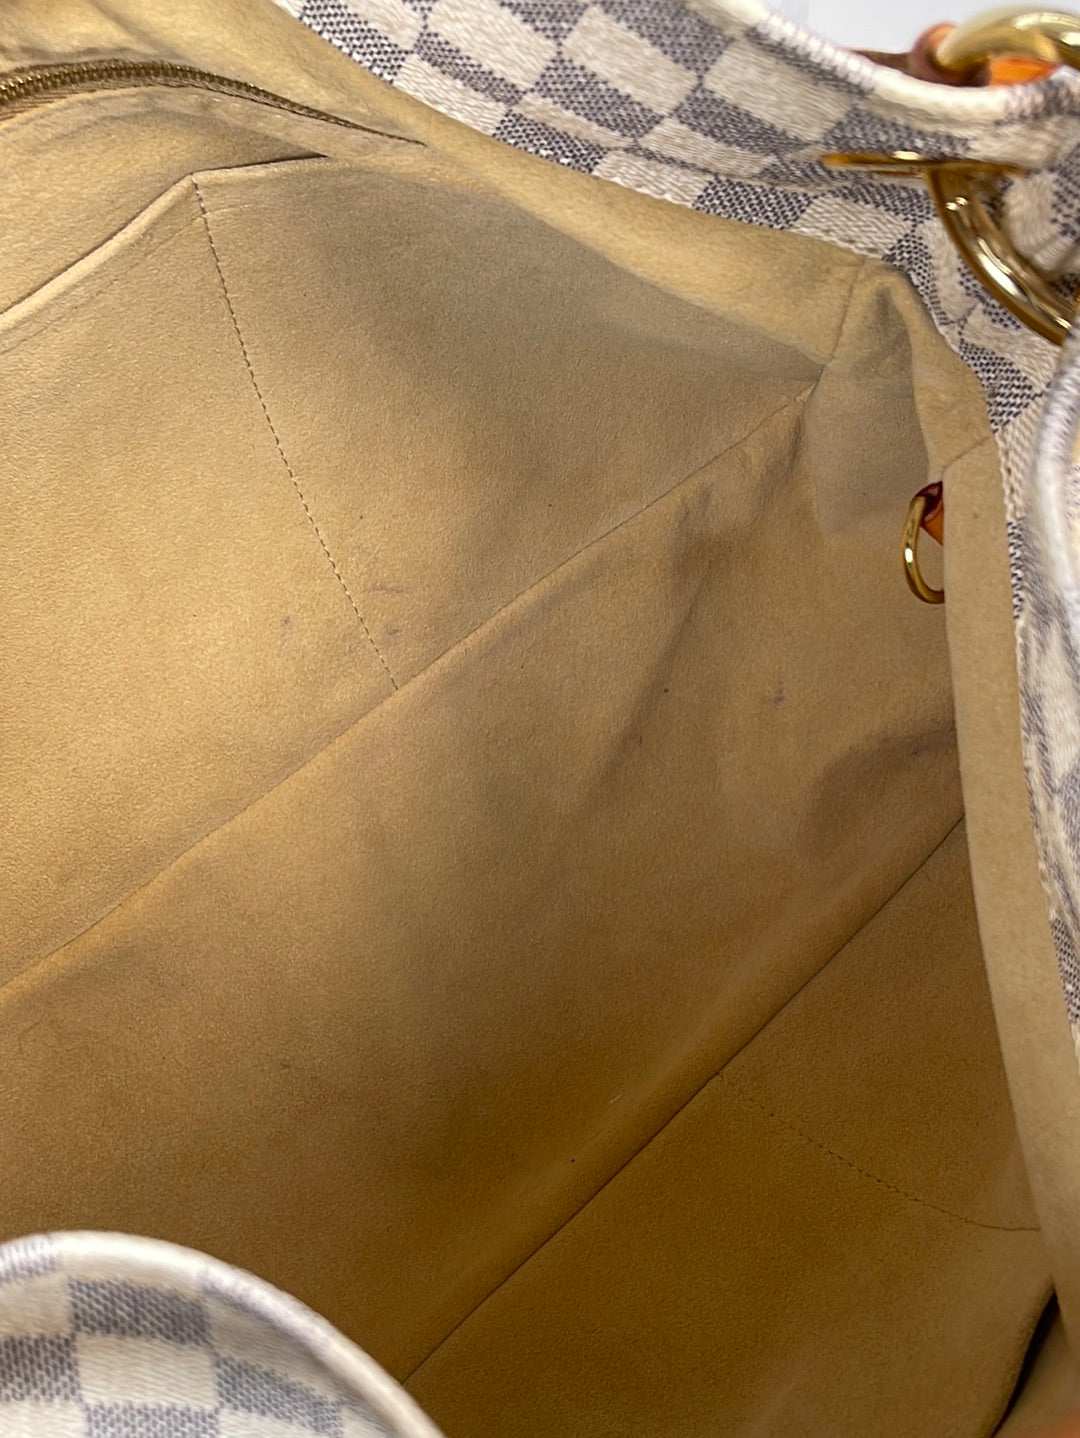 PRELOVED Louis Vuitton Artsy Damier Azur MM Shoulder bag SD4181 013023